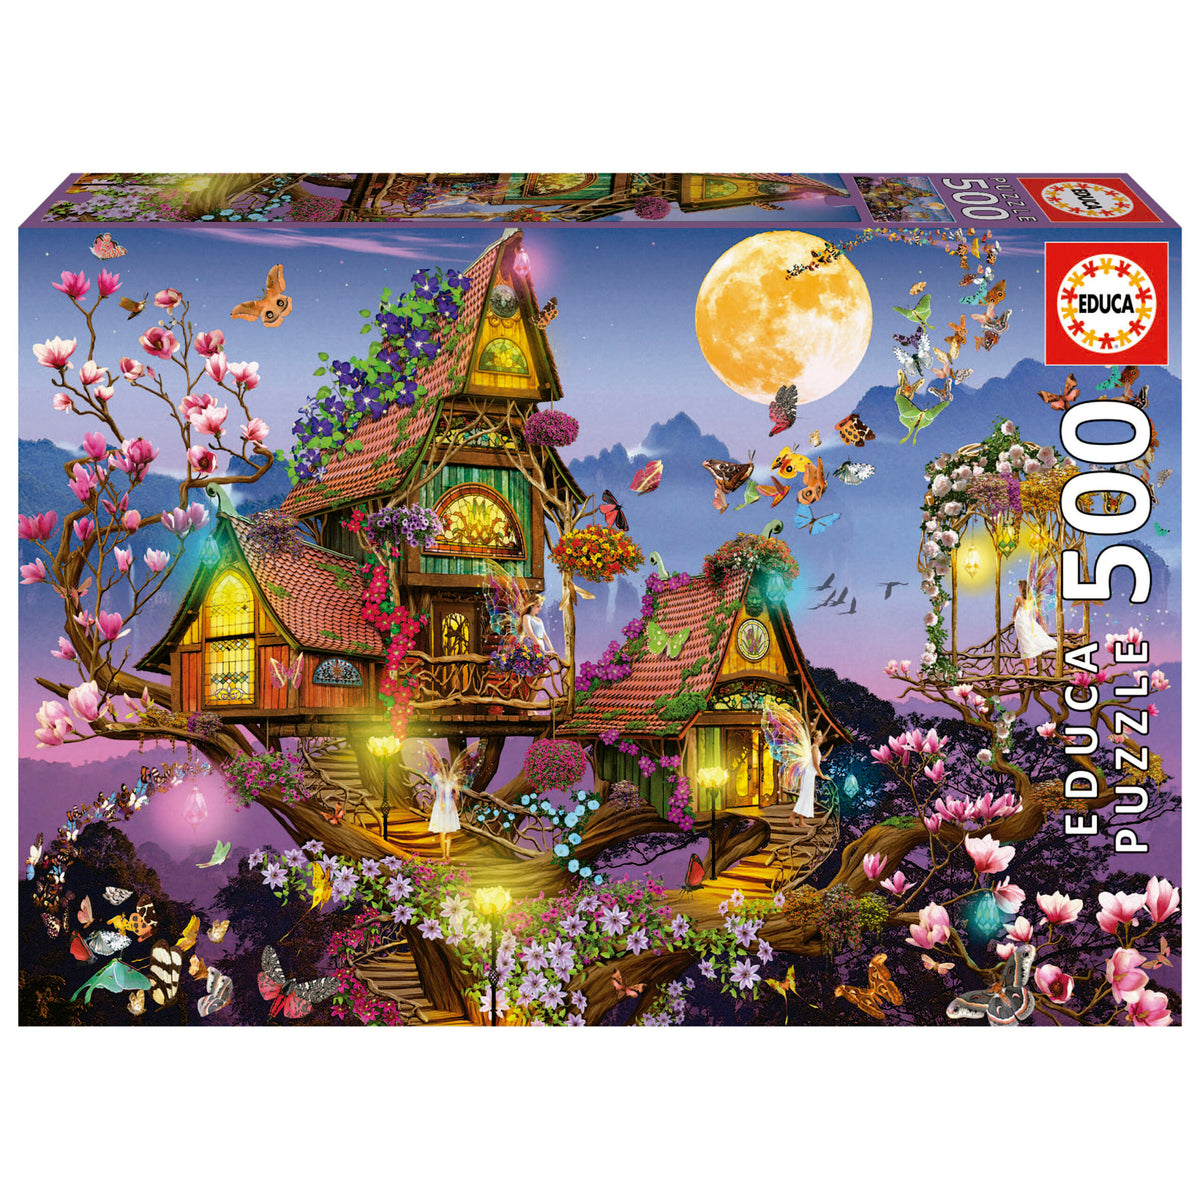 Educa - Fairy House 500 Piece Jigsaw